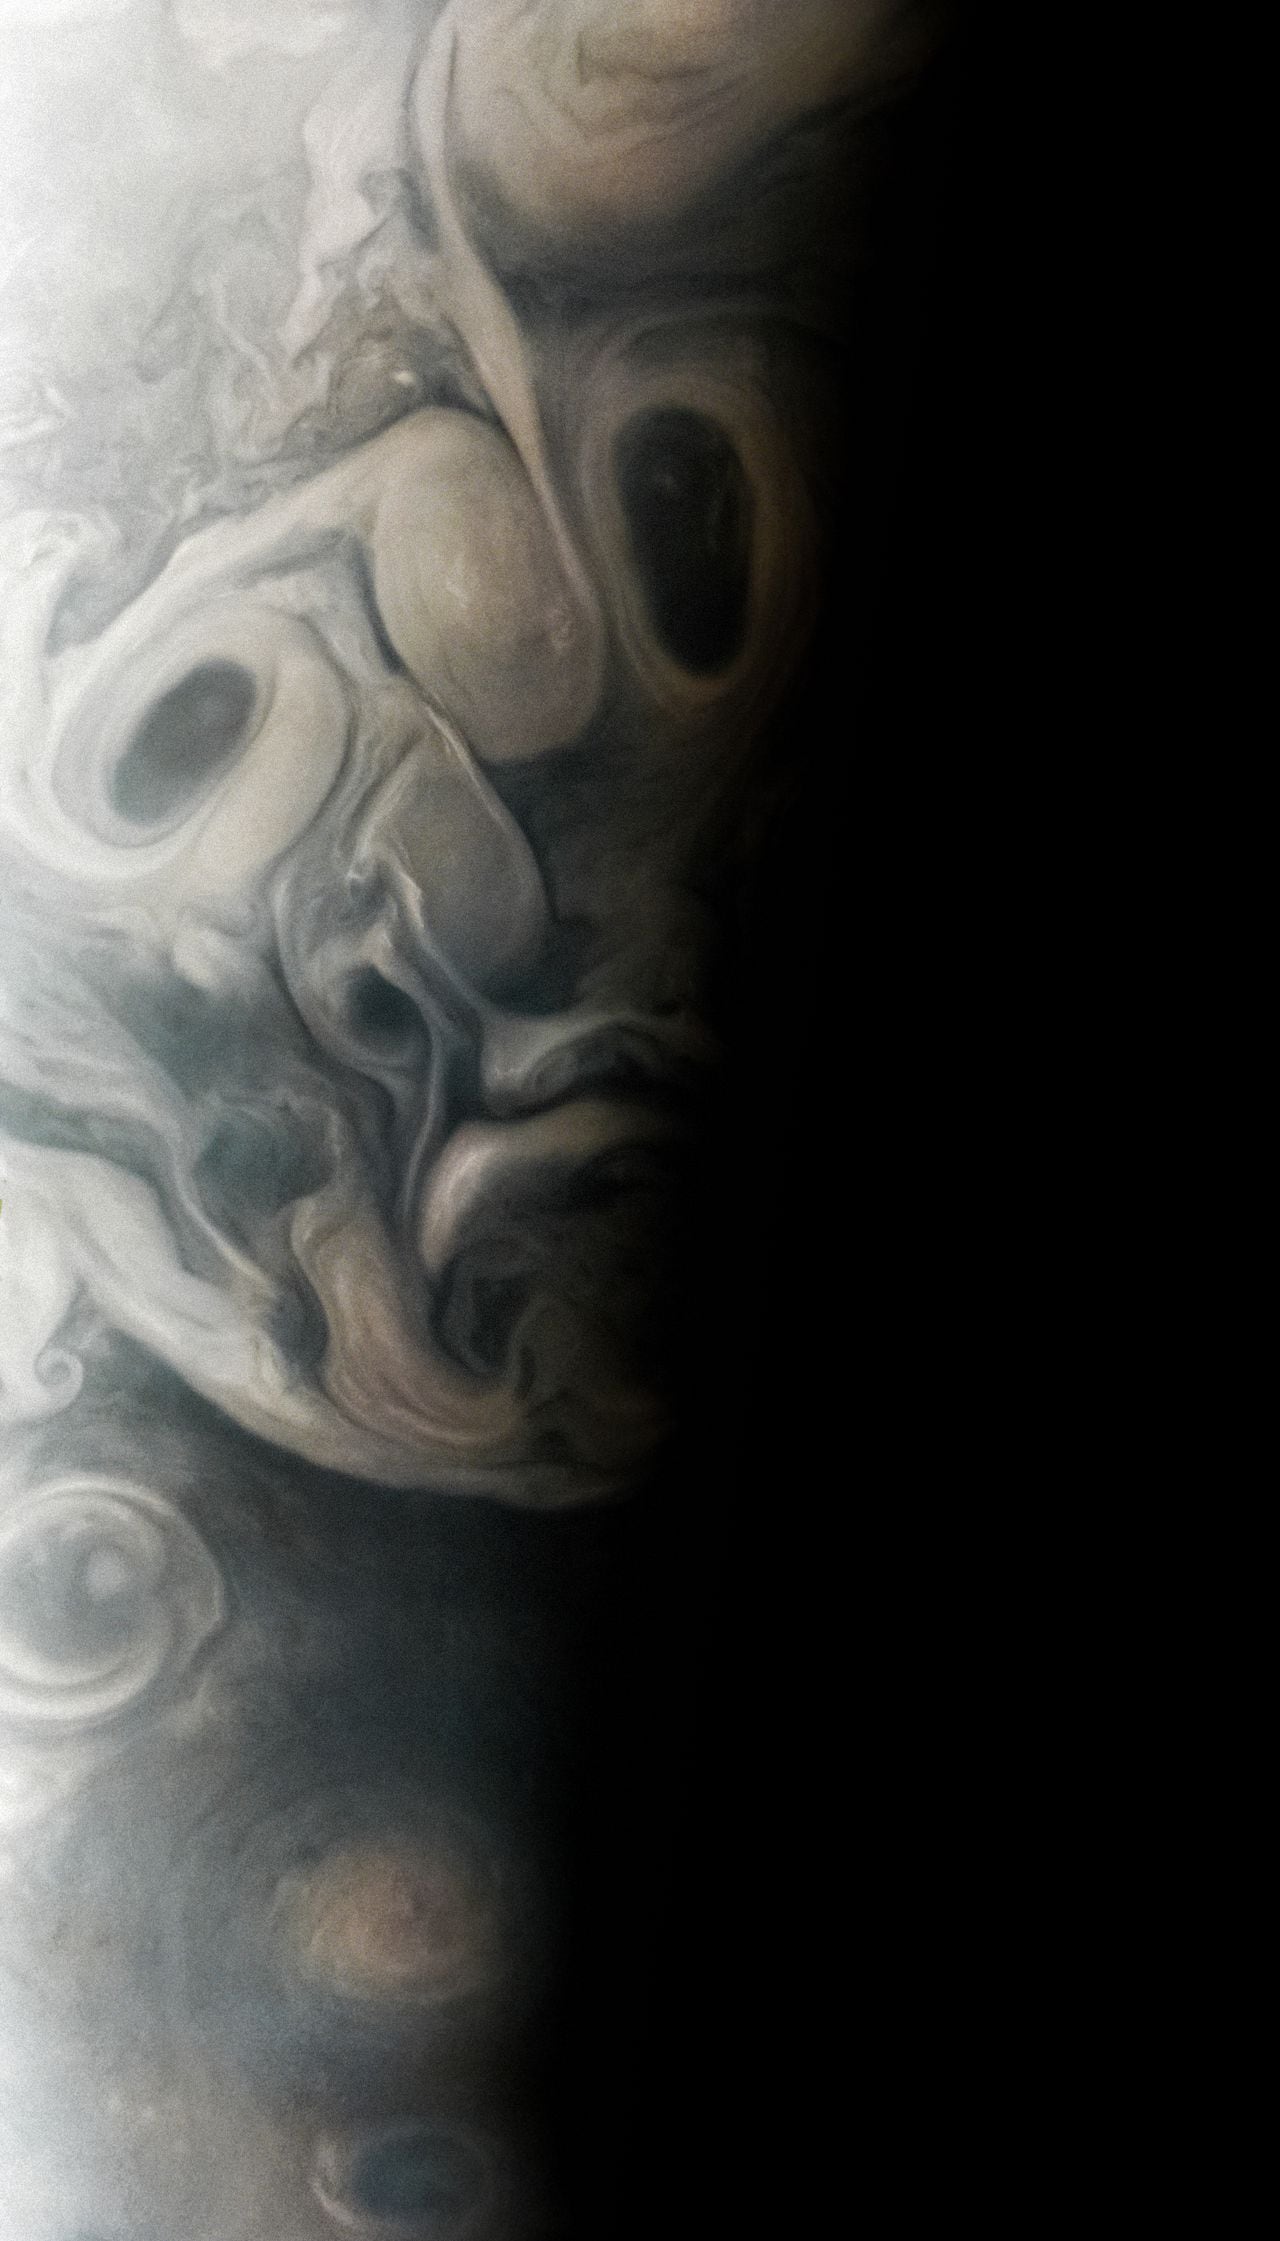 Captura de Júpiter muestra una imagen similar a una cara.